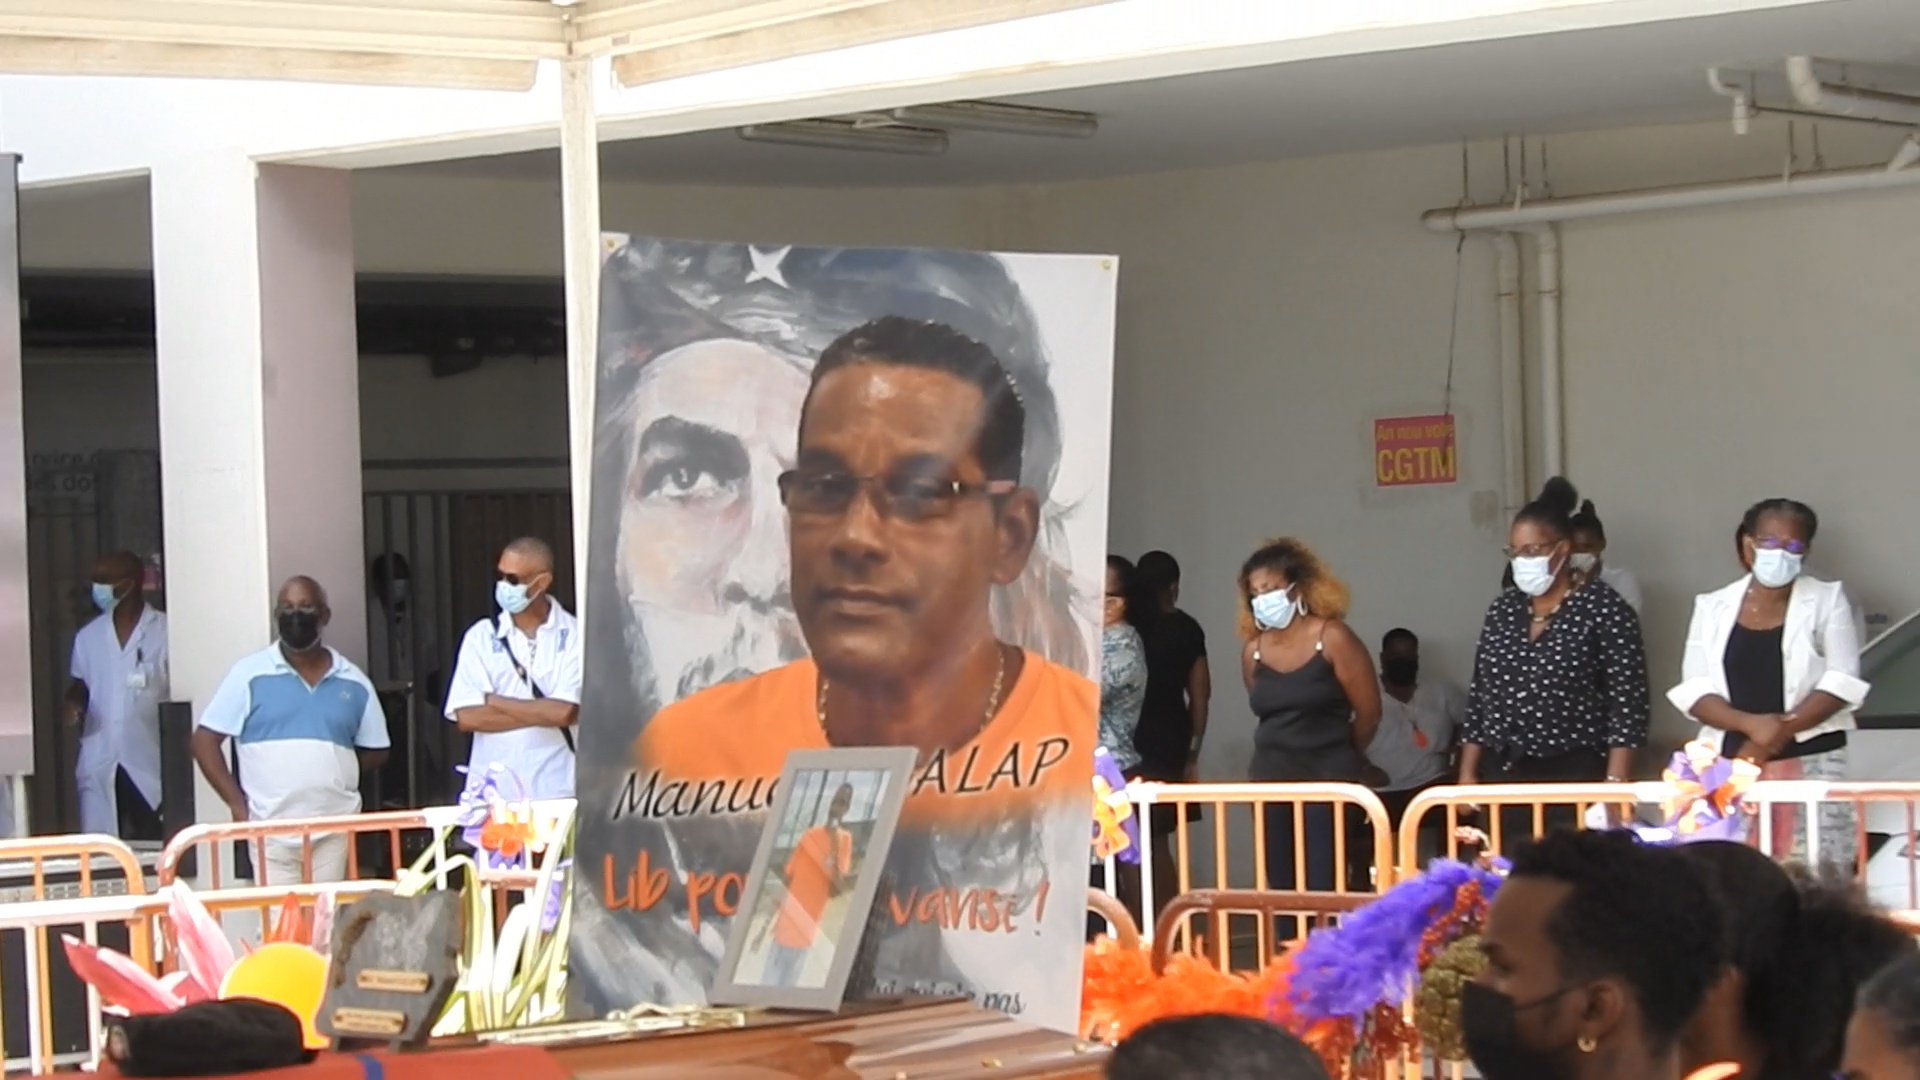 [Vidéo]Onews Martinique. Vibrant hommage au Syndicaliste mort du Covid Manuel GALAP